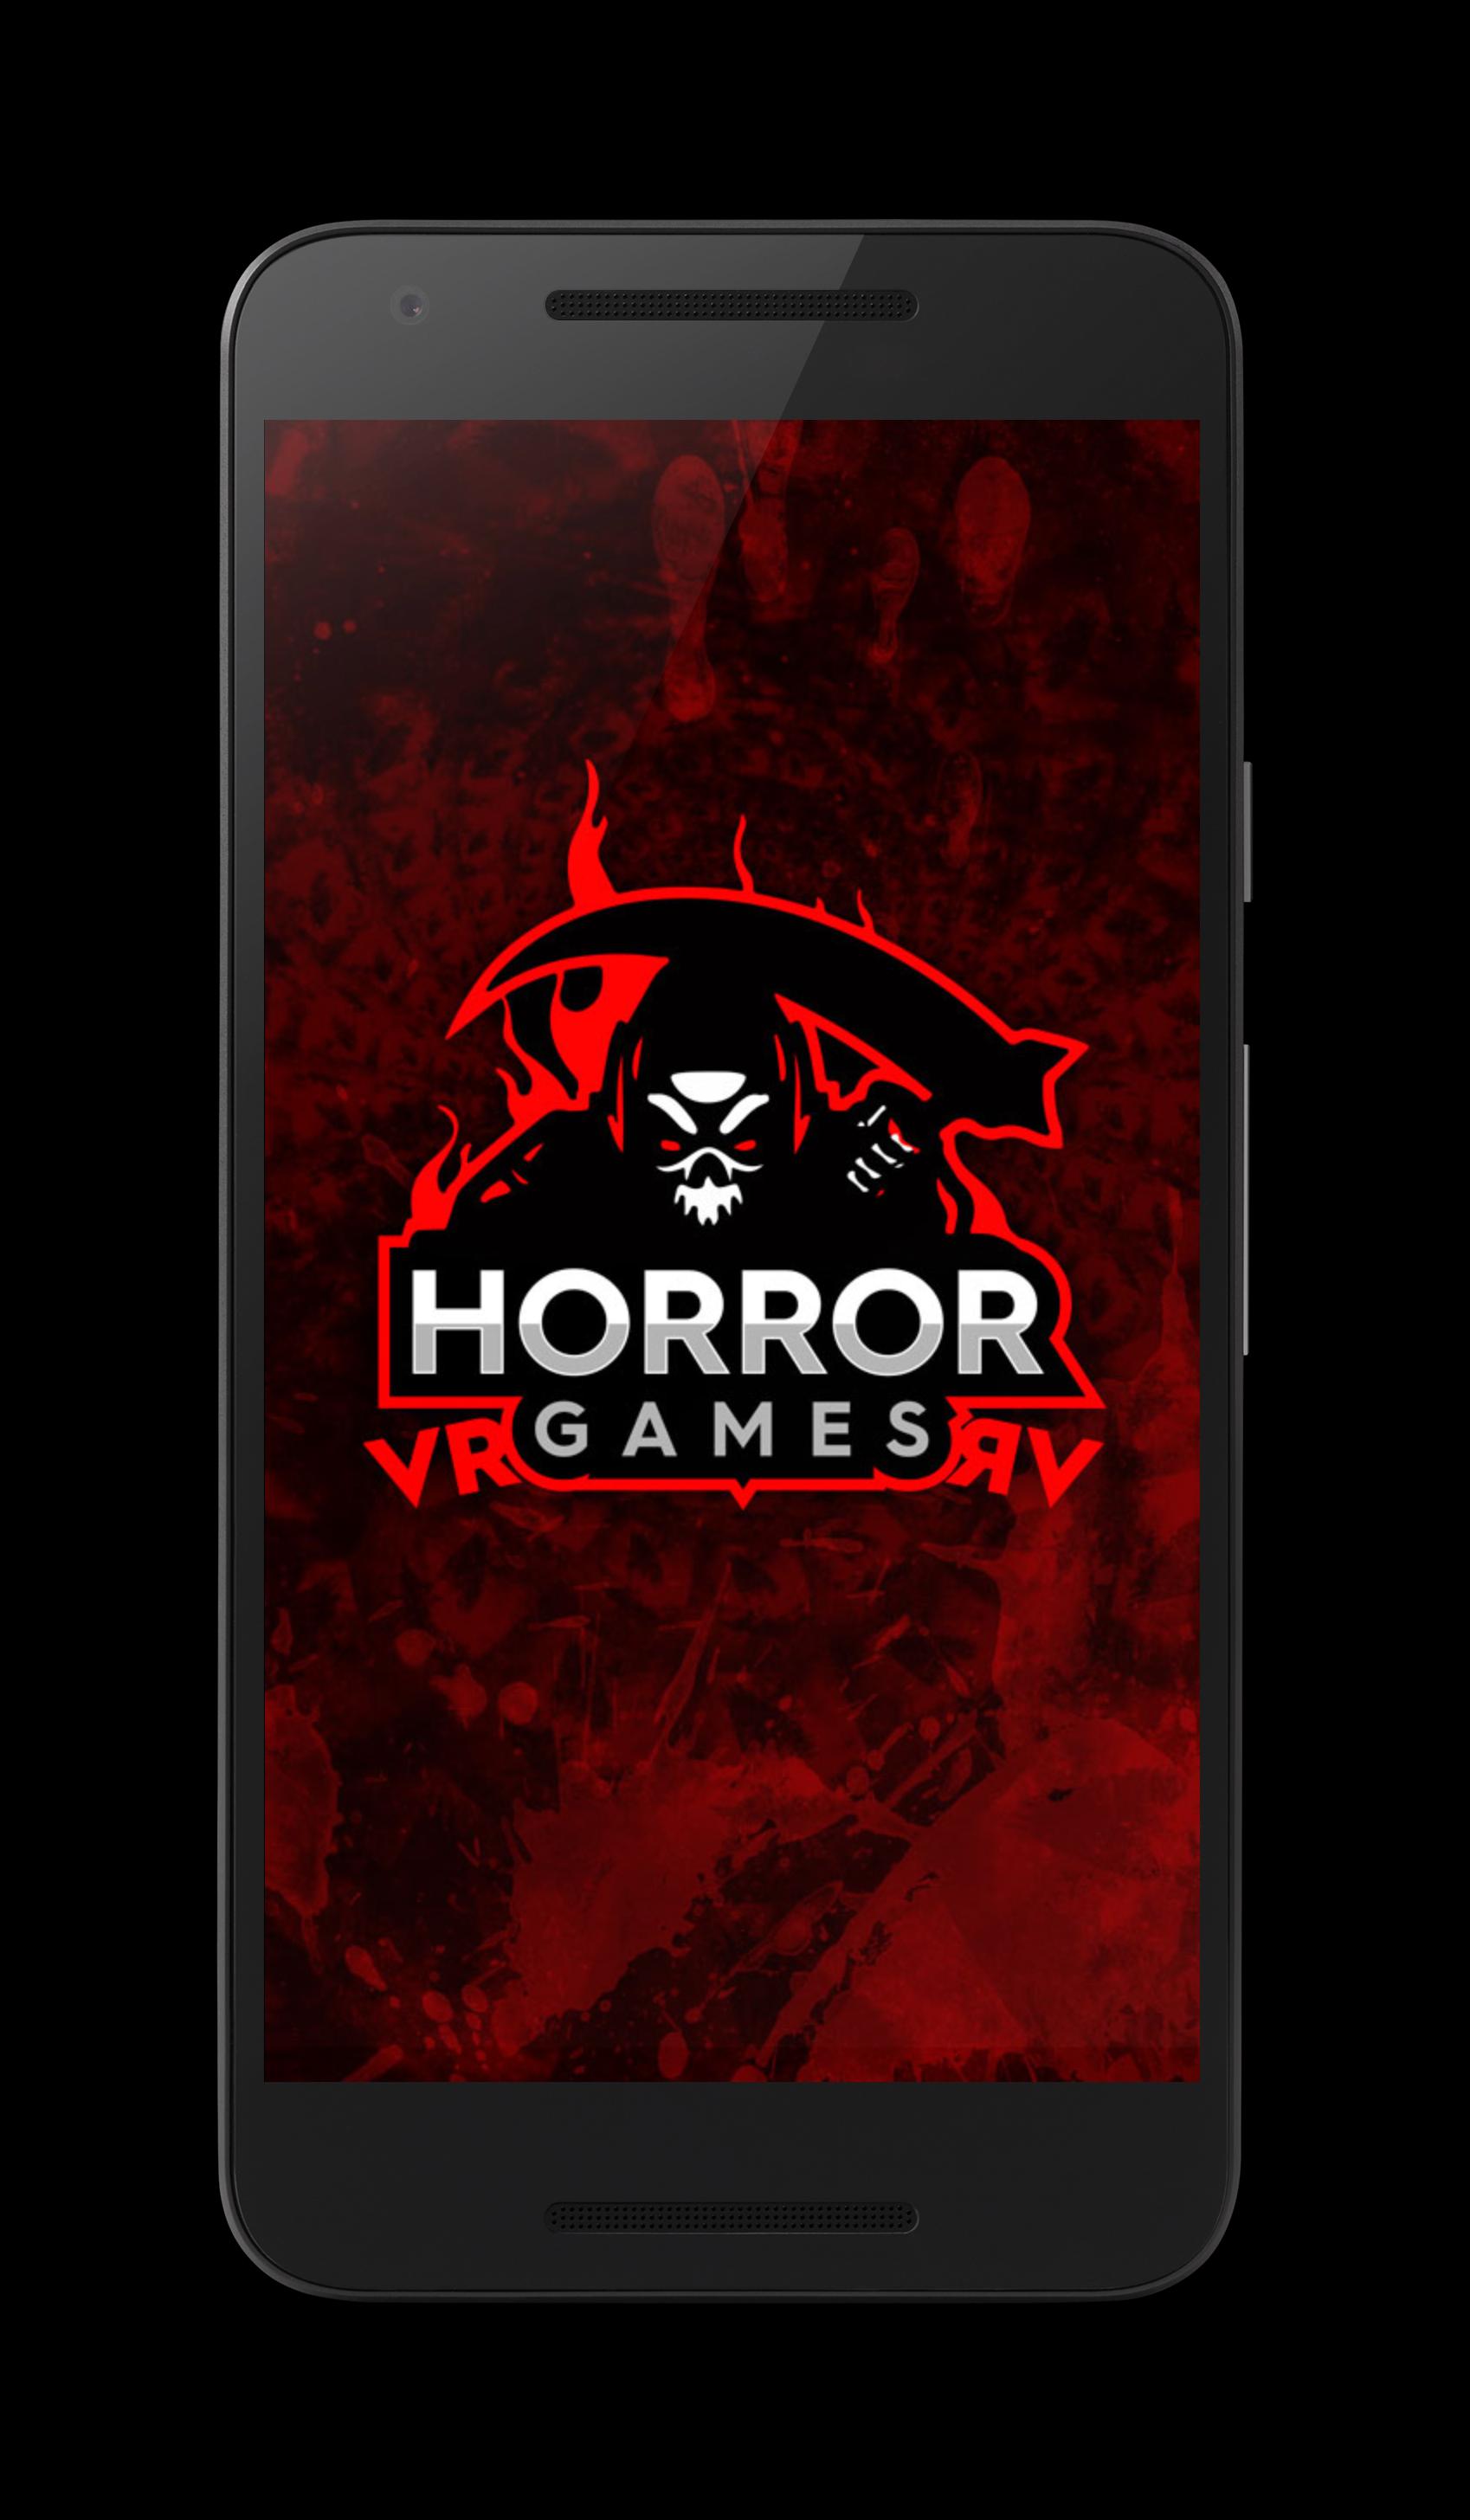 Juegos De Terror Vr 3 0 For Android Apk Download - probando juegos de gacha life de roblox